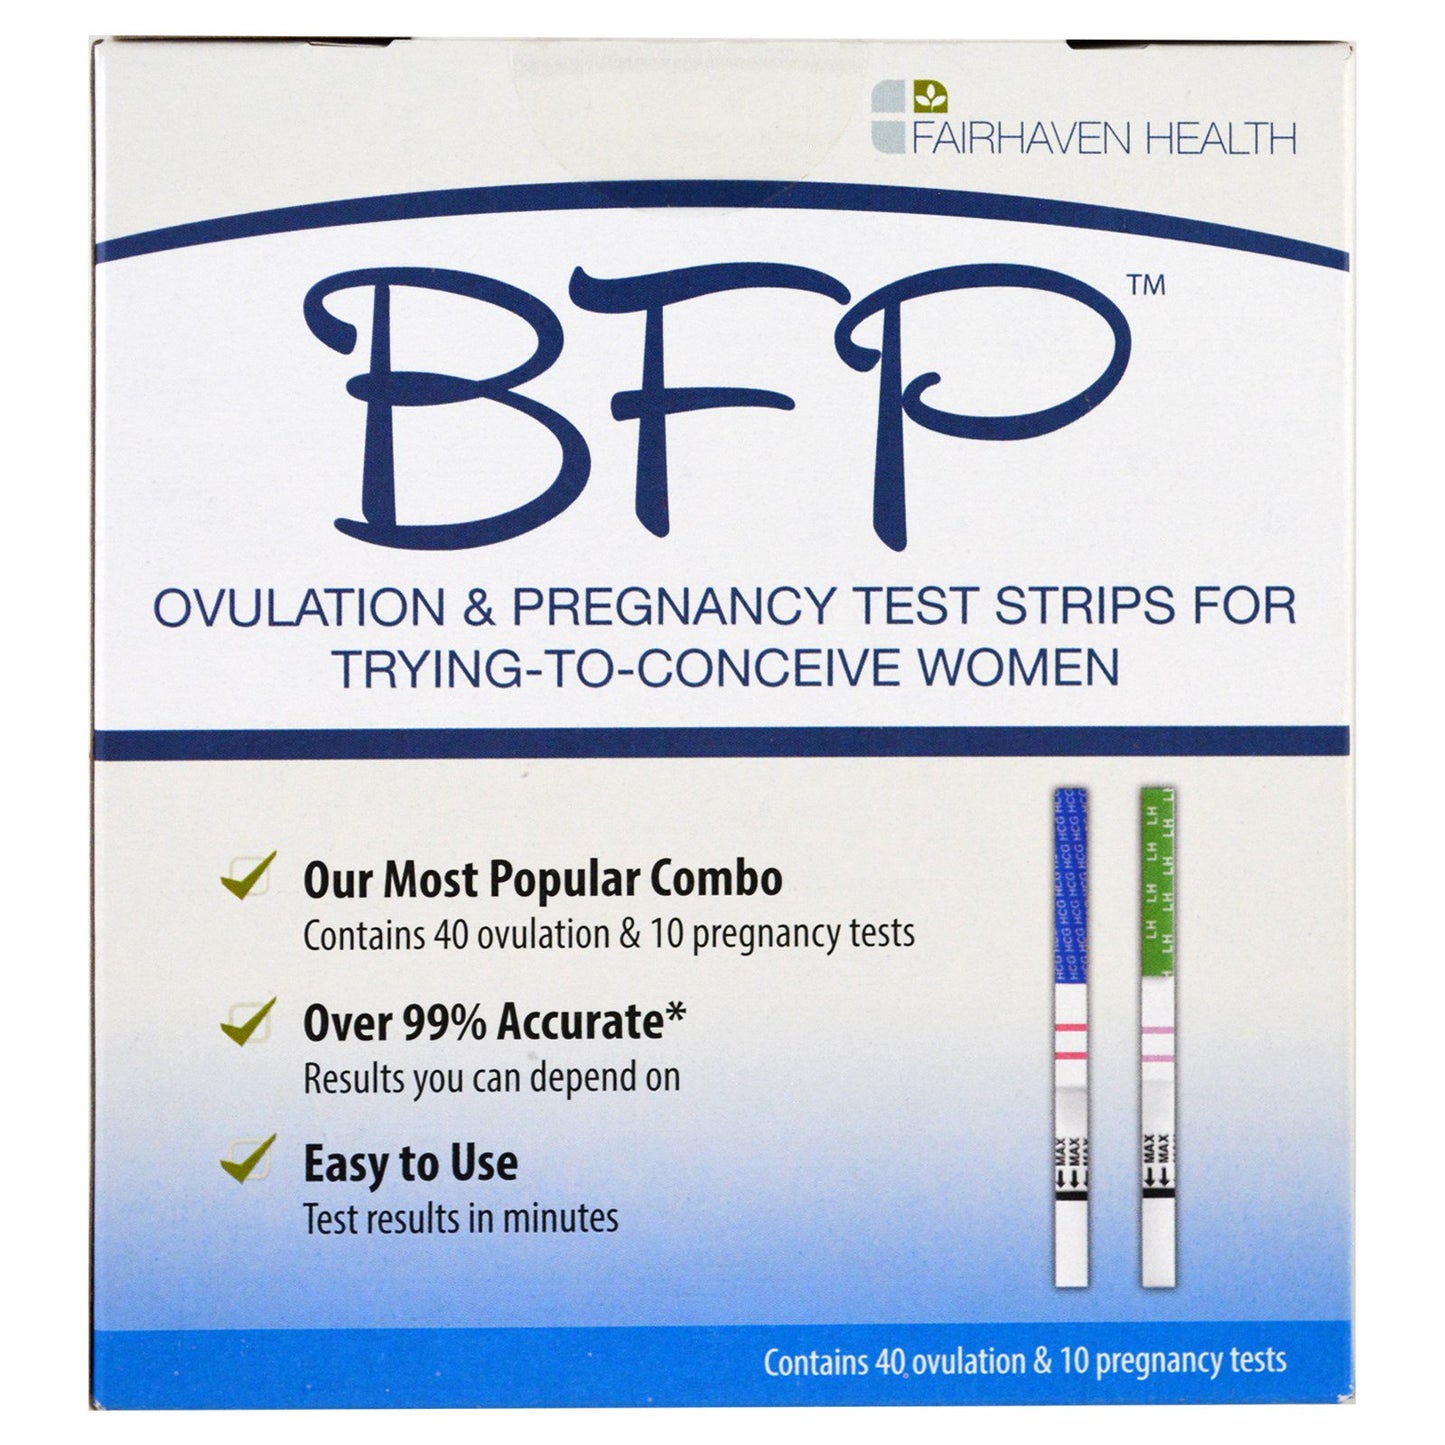 Paski testowe Fairhaven health, bfp, owulacja i ciąża dla kobiet starających się o poczęcie, 40 testów owulacyjnych i 10 testów ciążowych